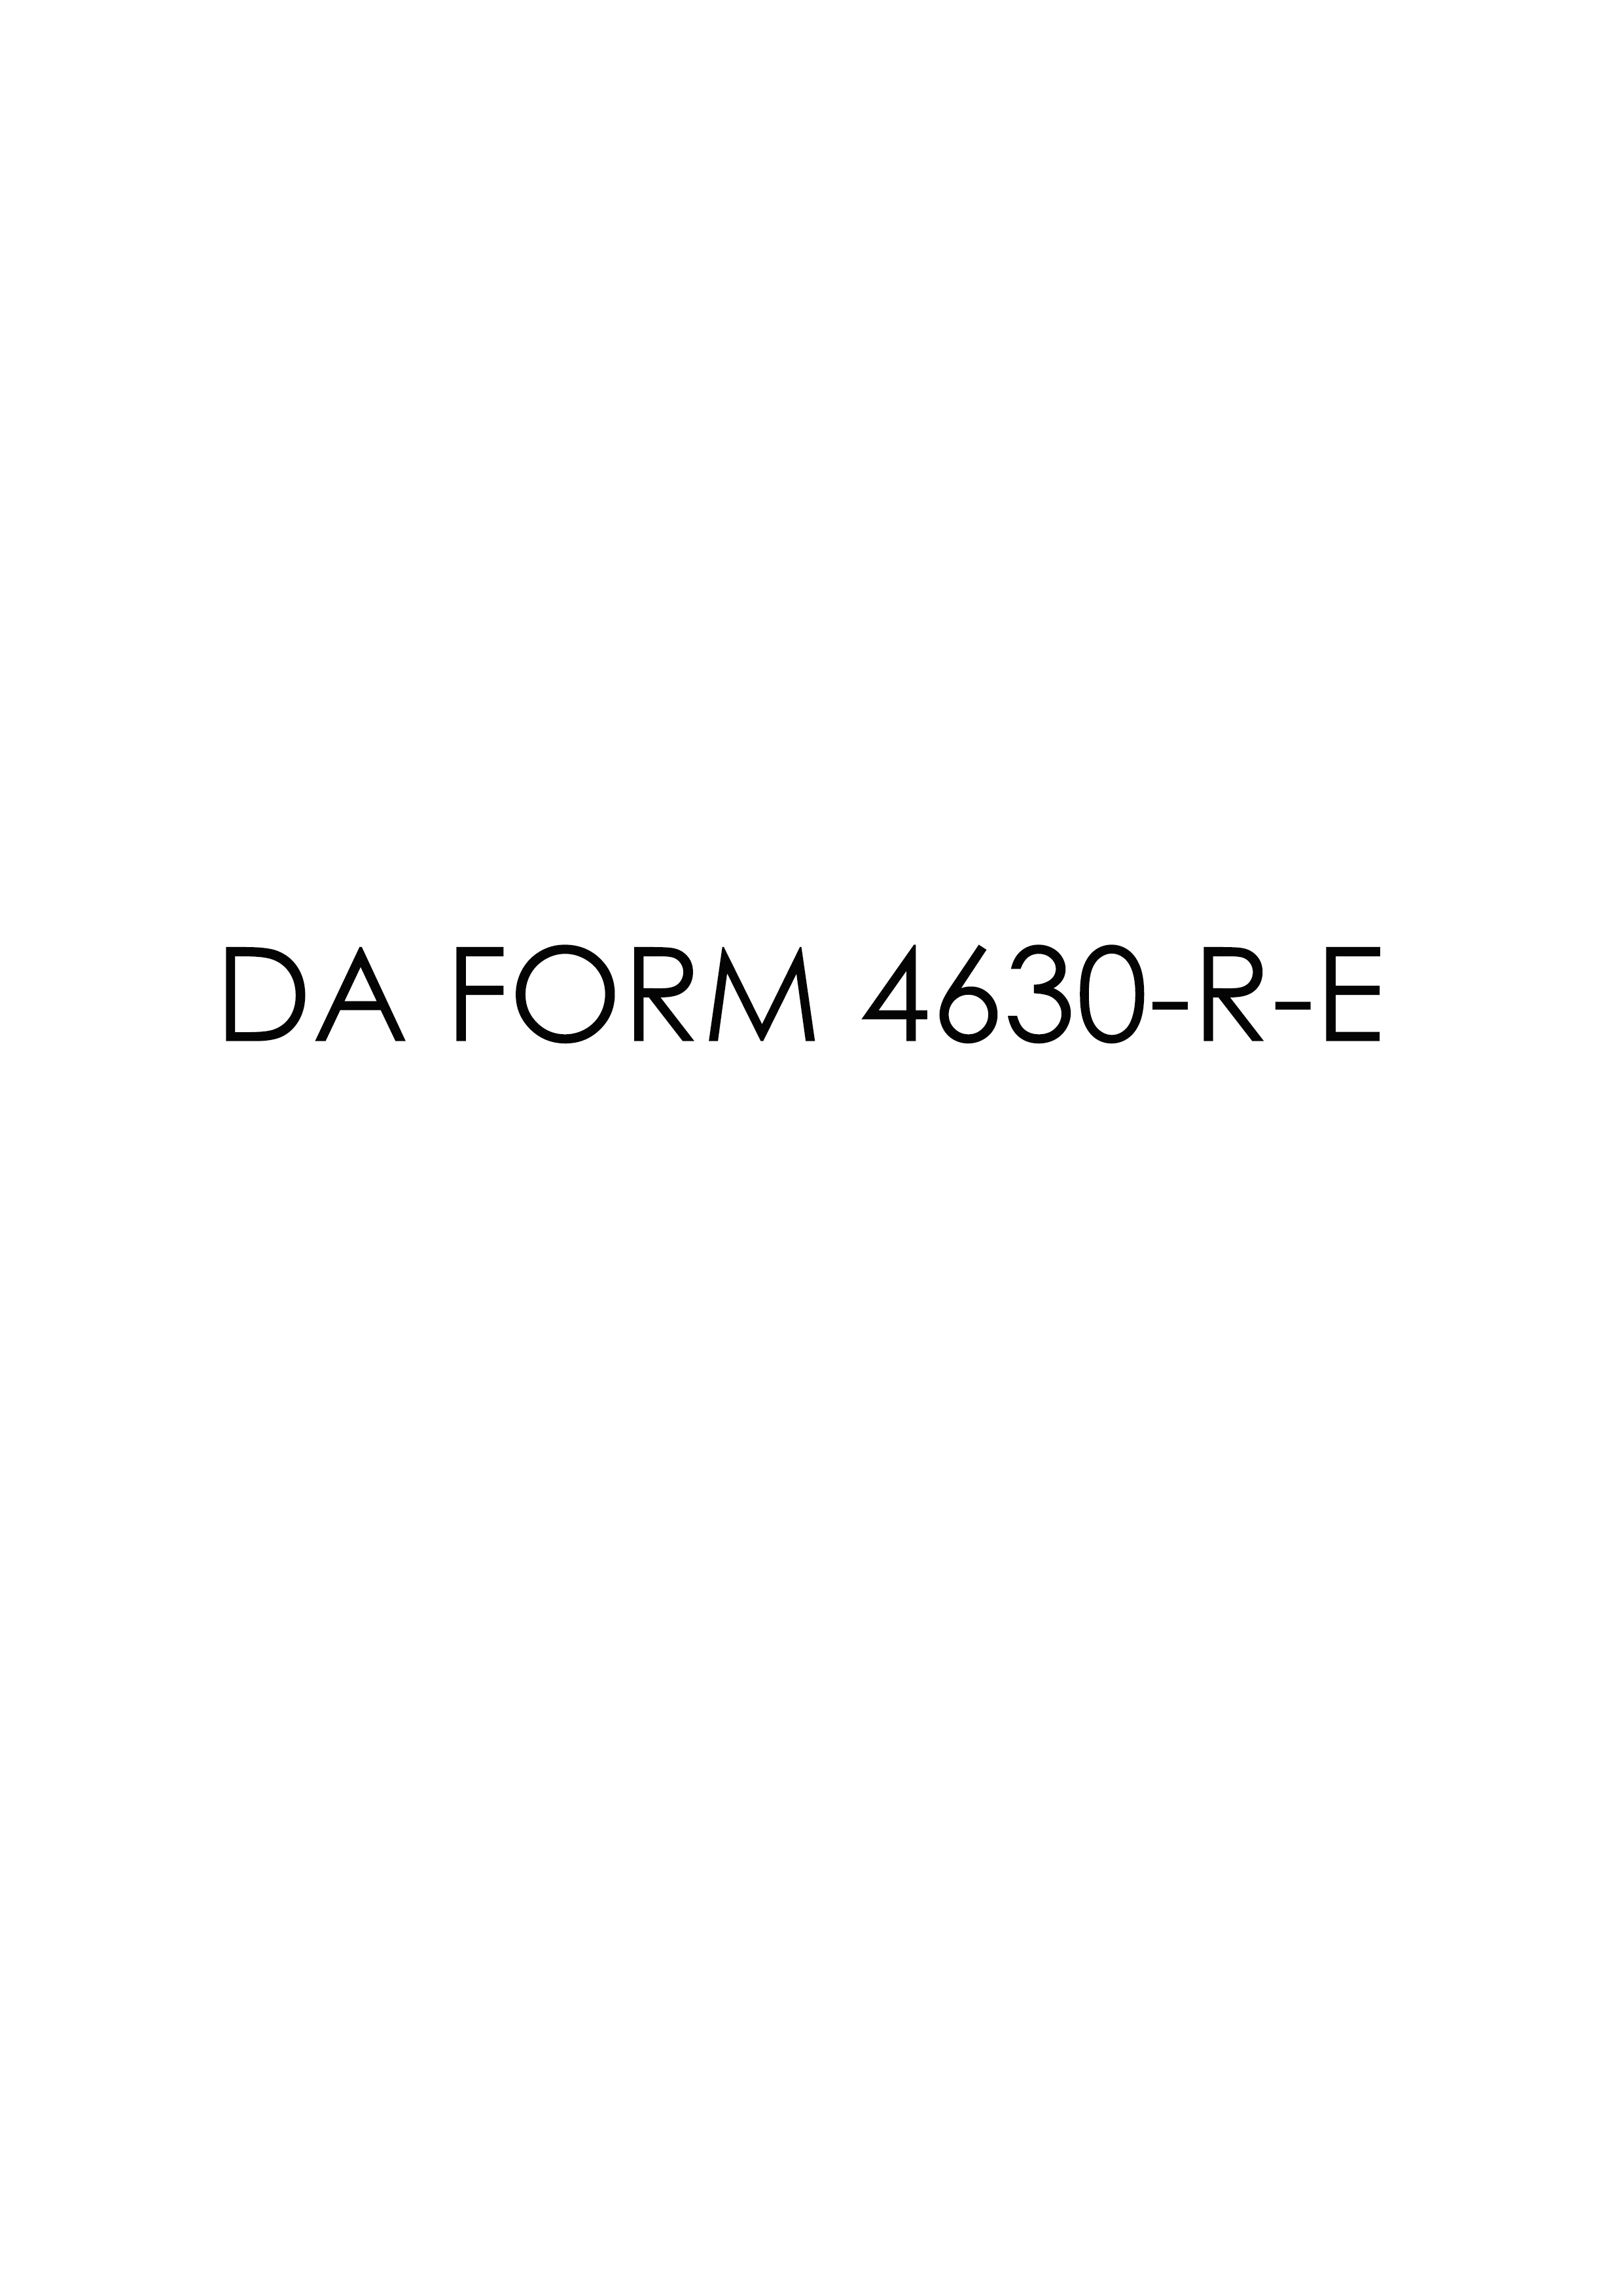 da Form 4630-R-E fillable